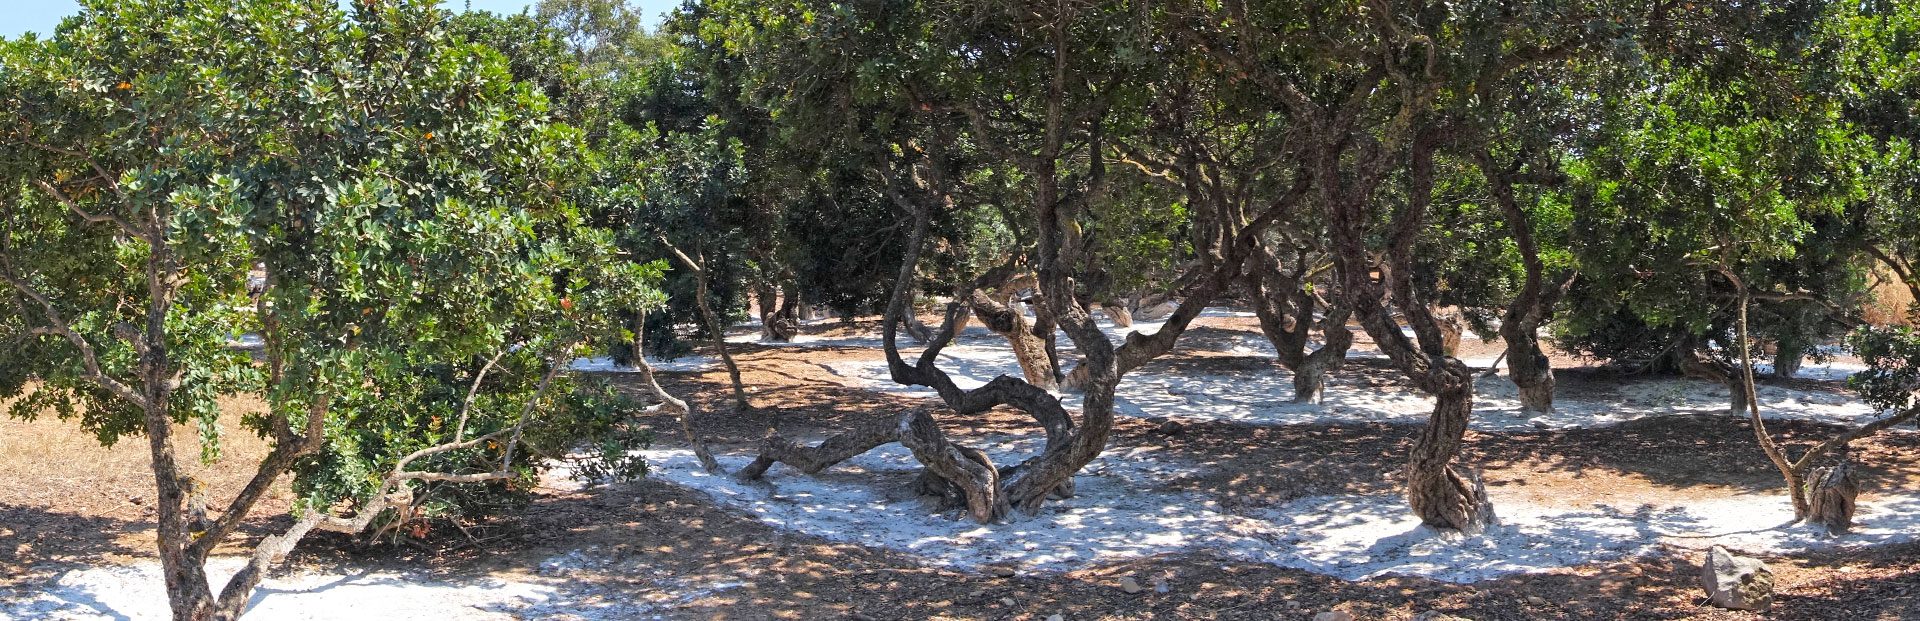 mastichový háj ostrova chios